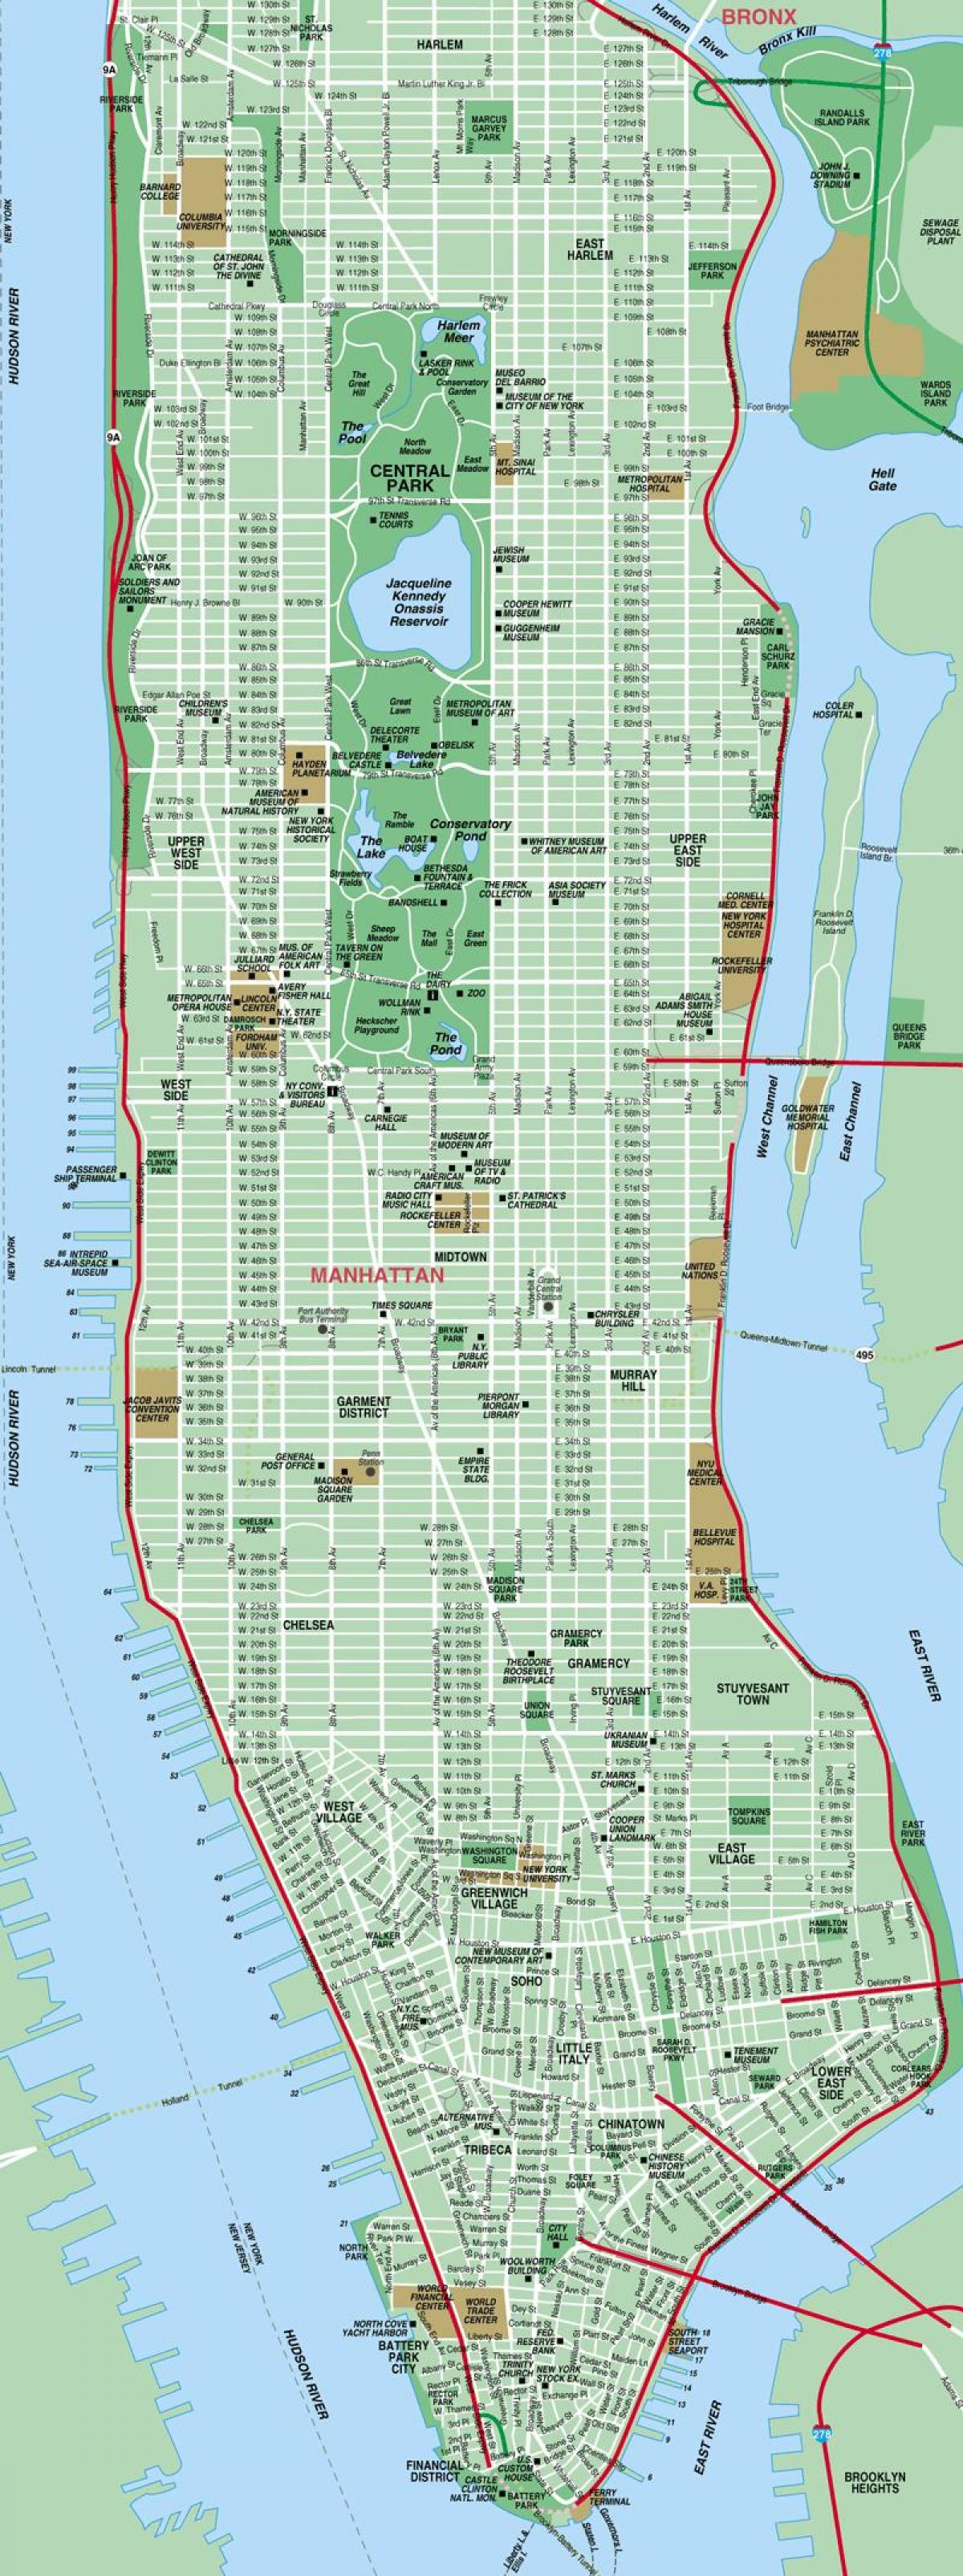 detaillierte Karte von Manhattan